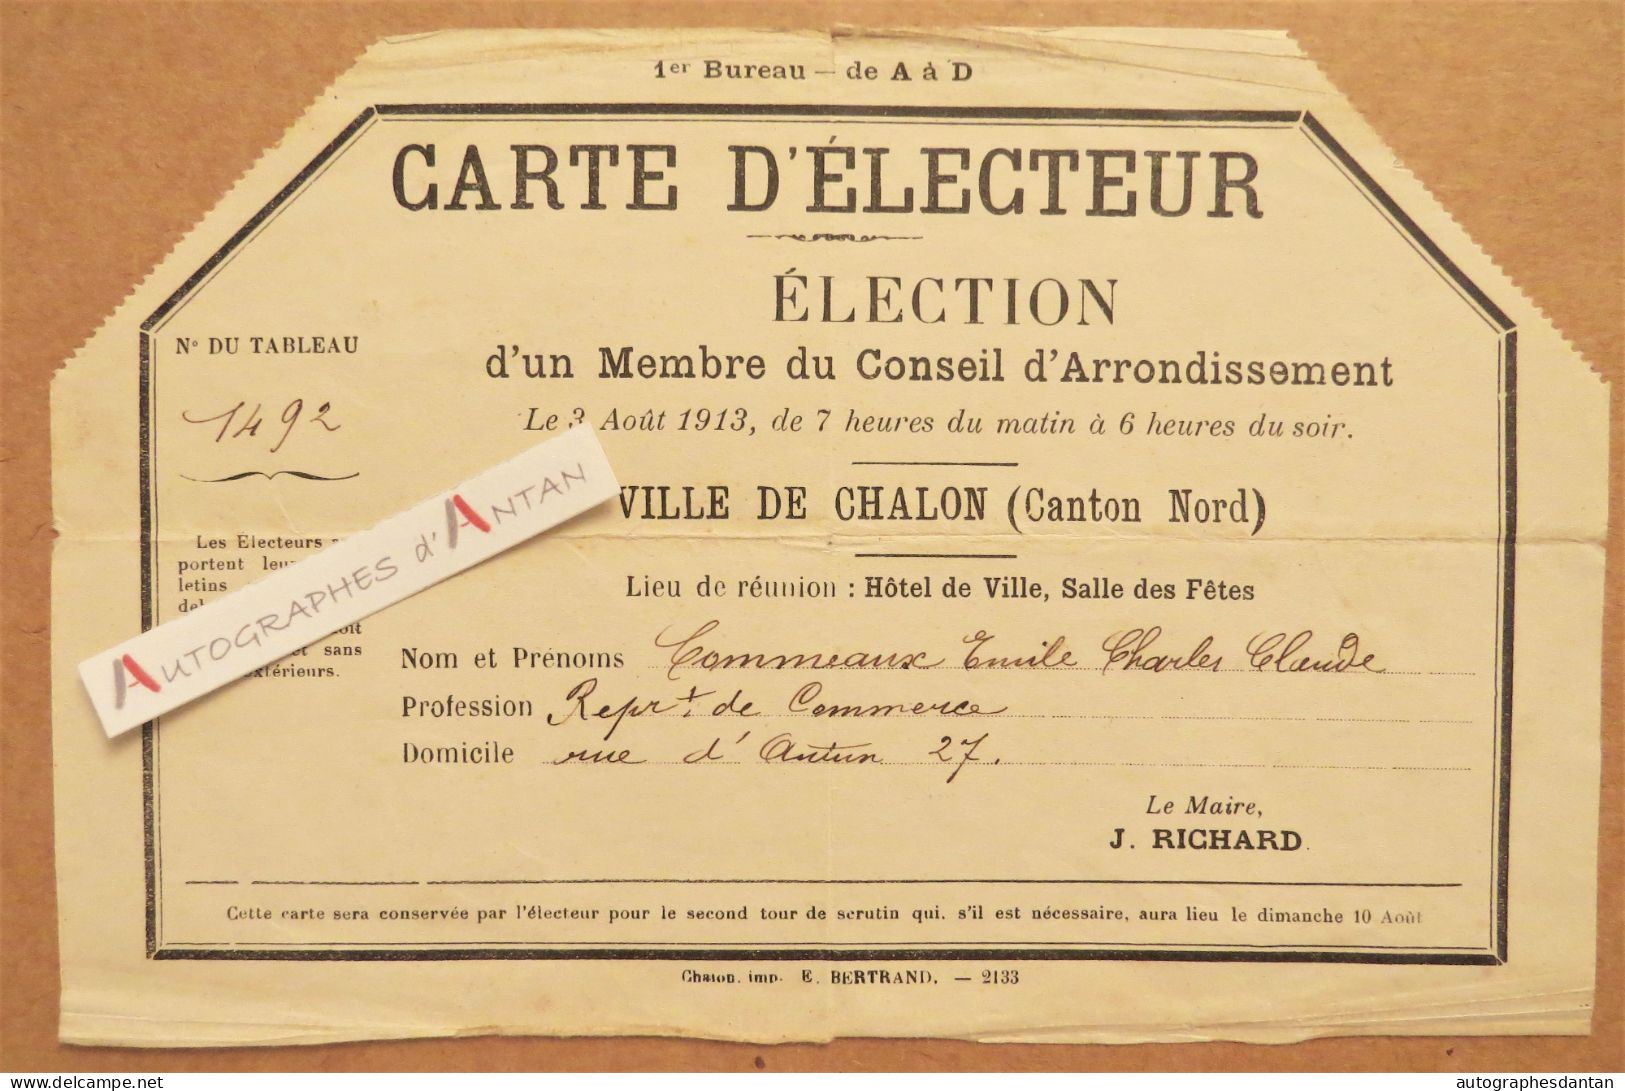 ● Carte D'électeur 1913 M. Commeaux - Chalon Sur Saône Saône Et Loire - Représentant De Commerce - 27 Rue D'Autun - Mitgliedskarten